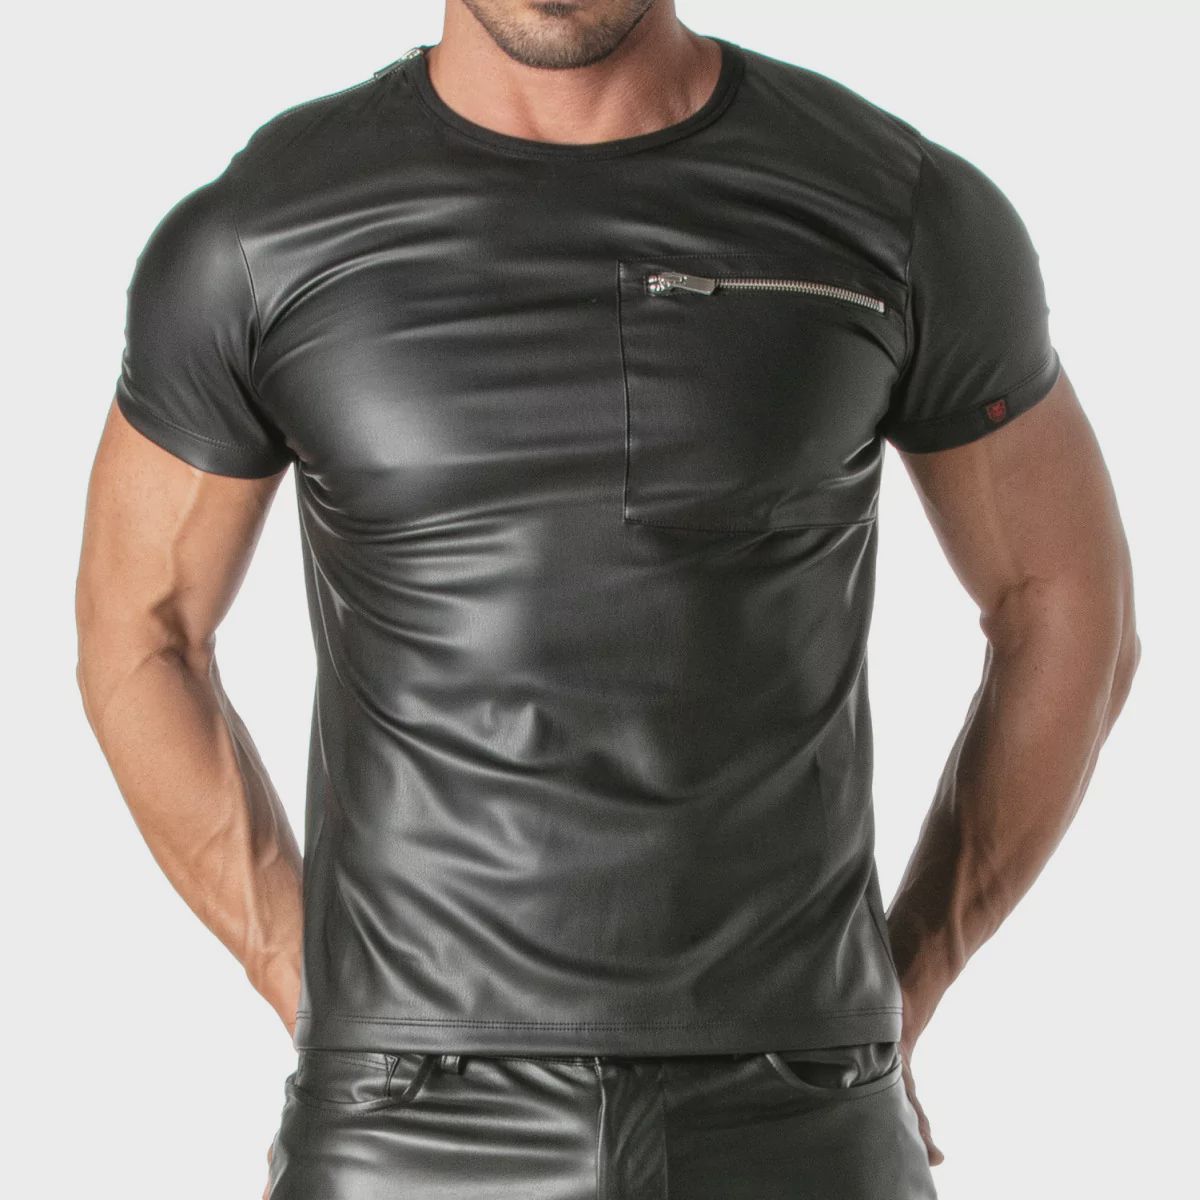 kinky-zipped-pocket-t-shirt-for-men-.jpg